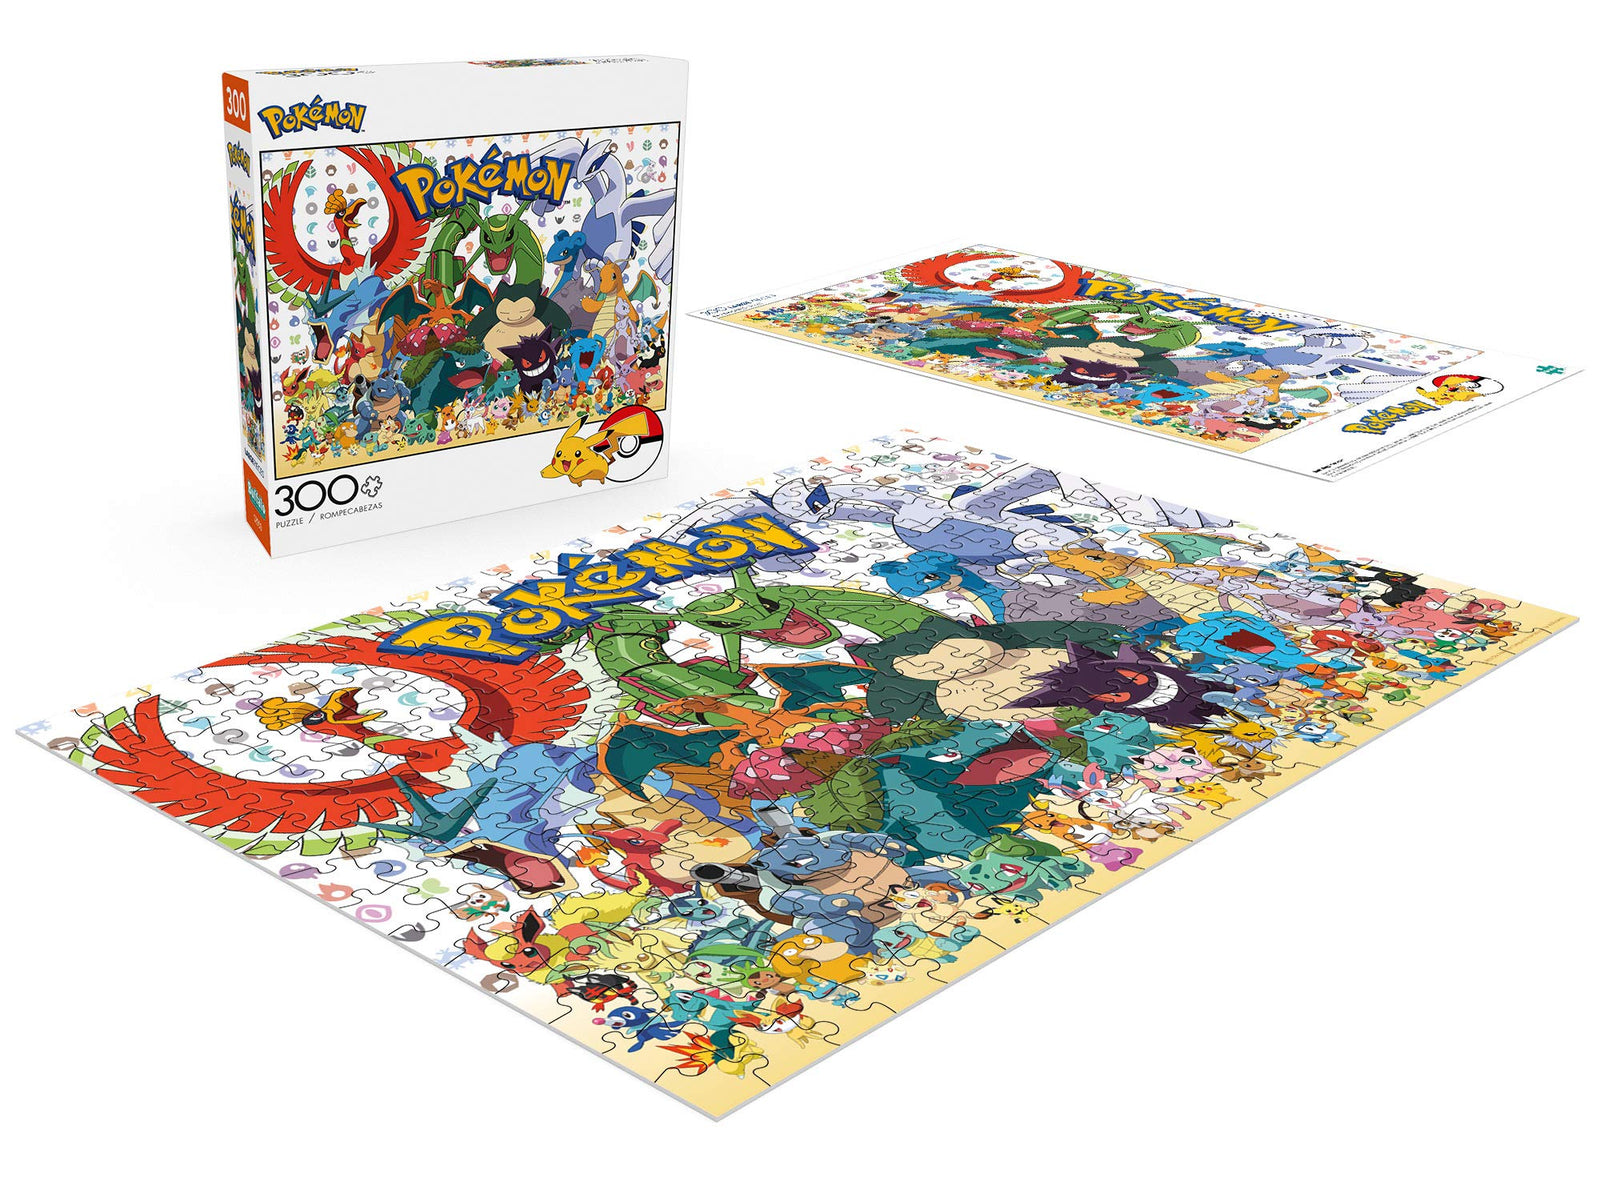 Buffalo Games - Pokémon - Fan Favorites - 300 Large Piece Jigsaw Puzzle Multicolor, 21.25"L X 15"W